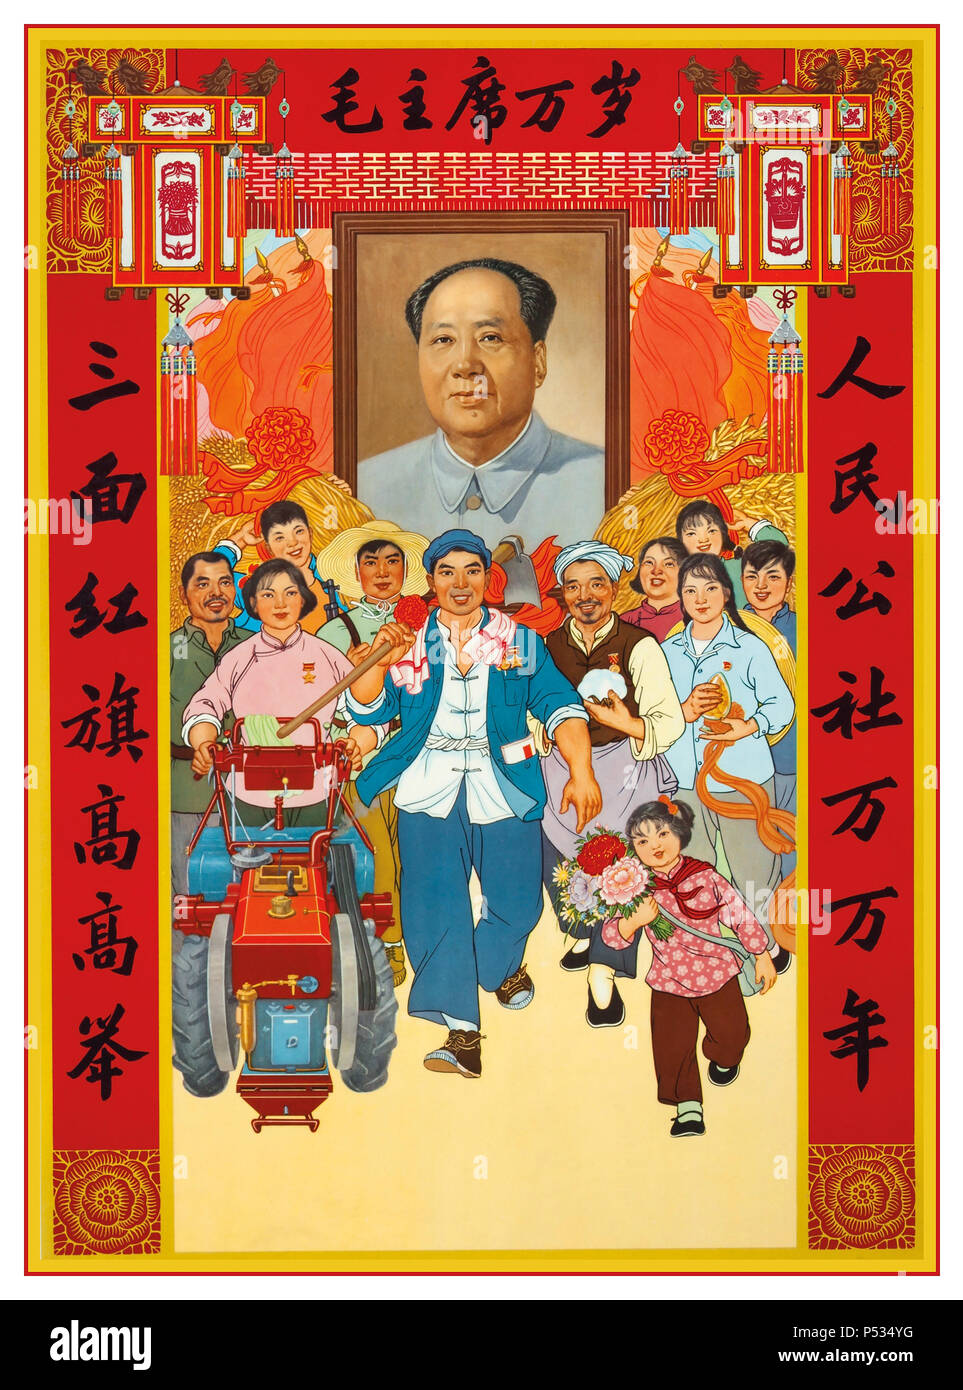 Affiche de propagande communiste chinoise Mao du président d'époque « Grand enseignant » L'affiche de propagande communiste idéaliste du Grand Commandant des années 1960, qui fait la promotion de Mao Zedong comme chef de la Chine communiste avec throng de heureux des travailleurs souriants et des familles Banque D'Images